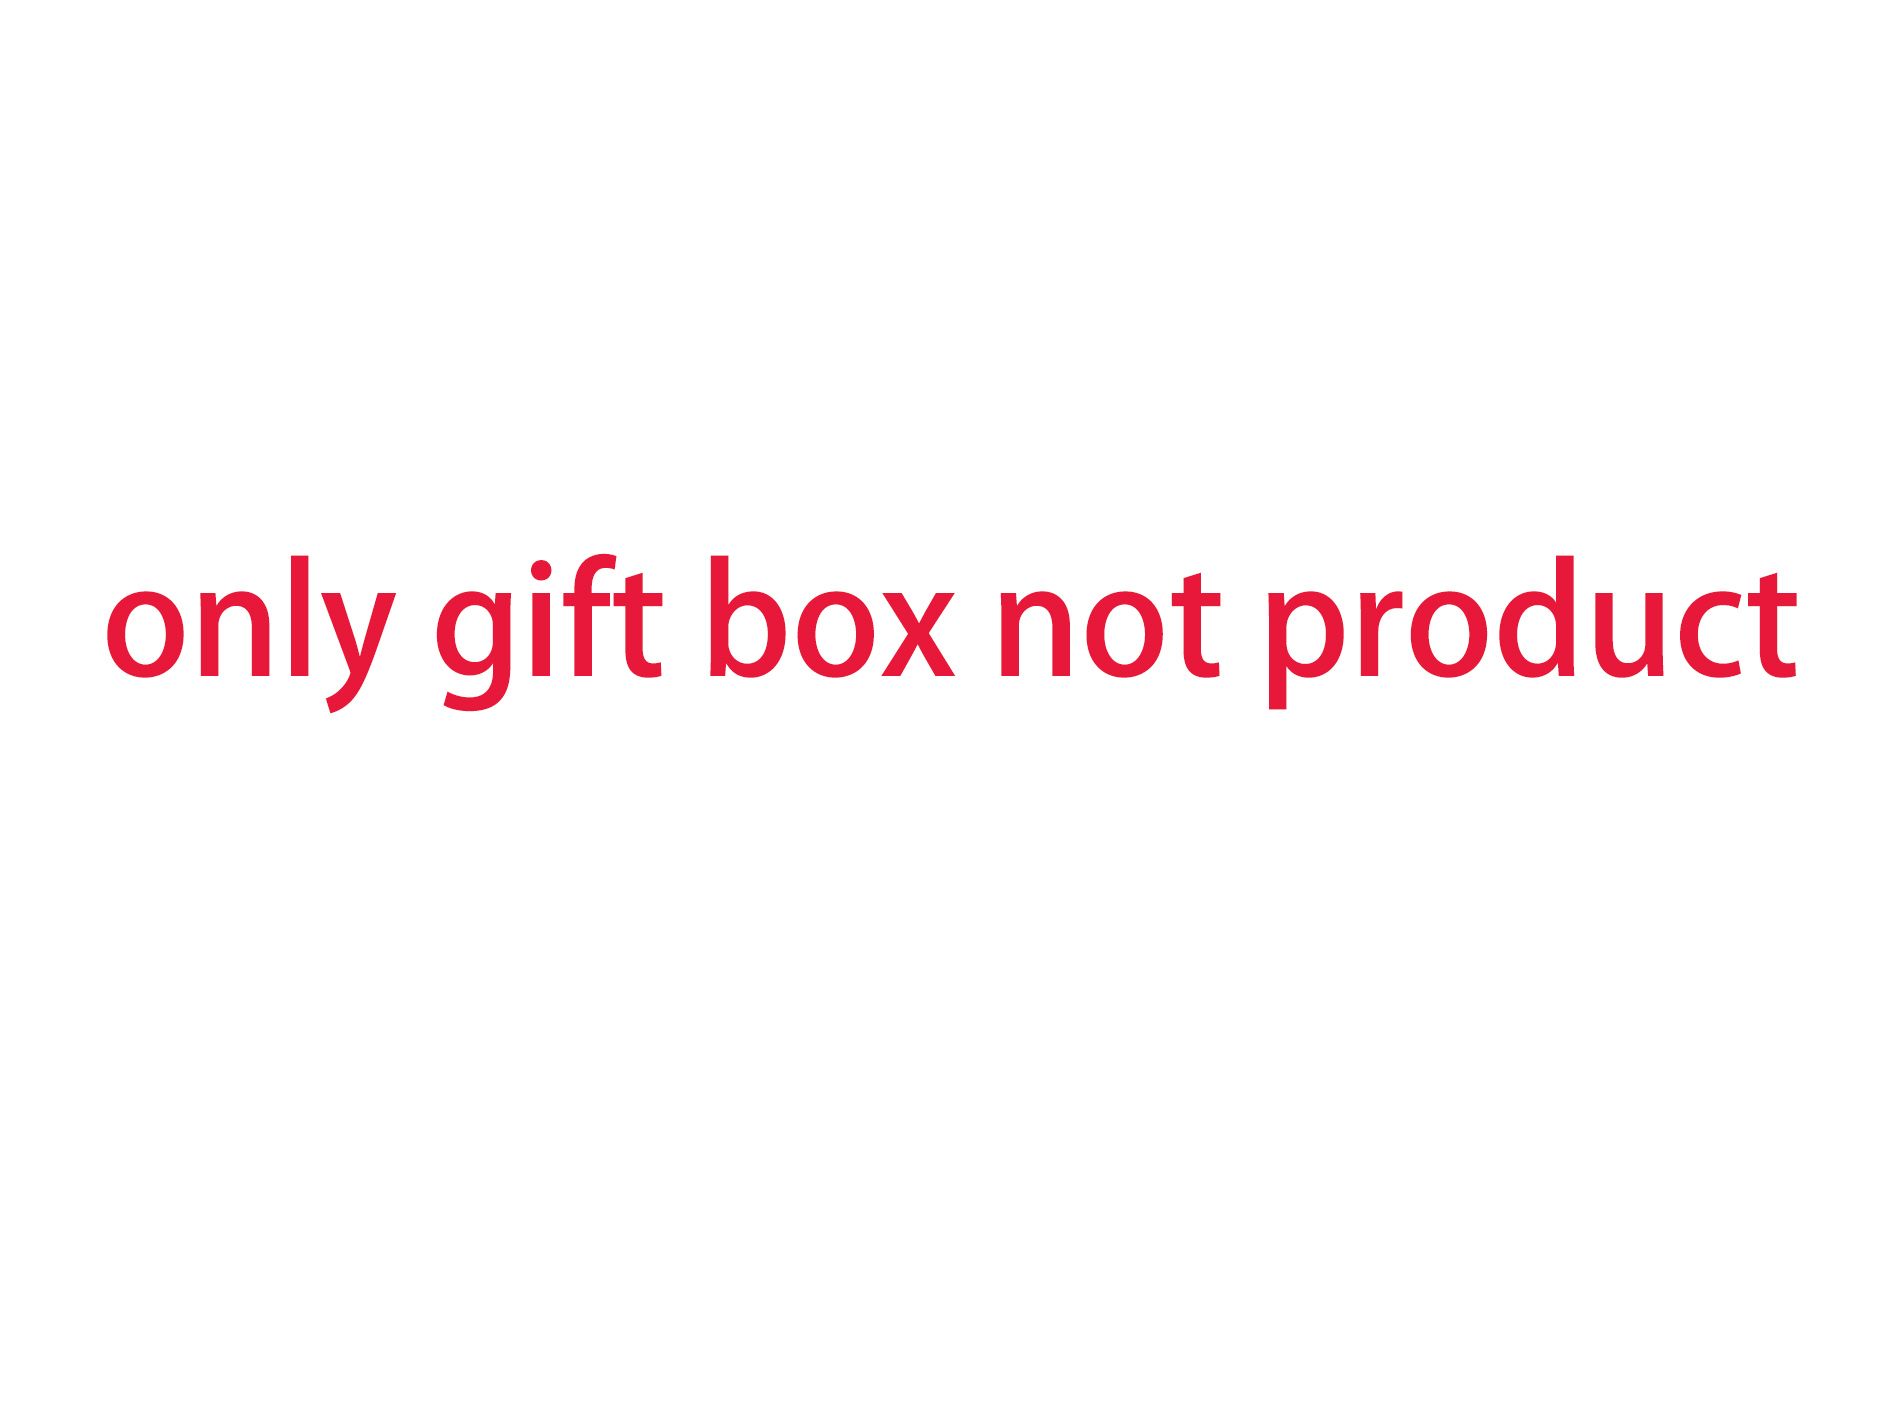 дополнительная плата за упаковку подарочной коробки